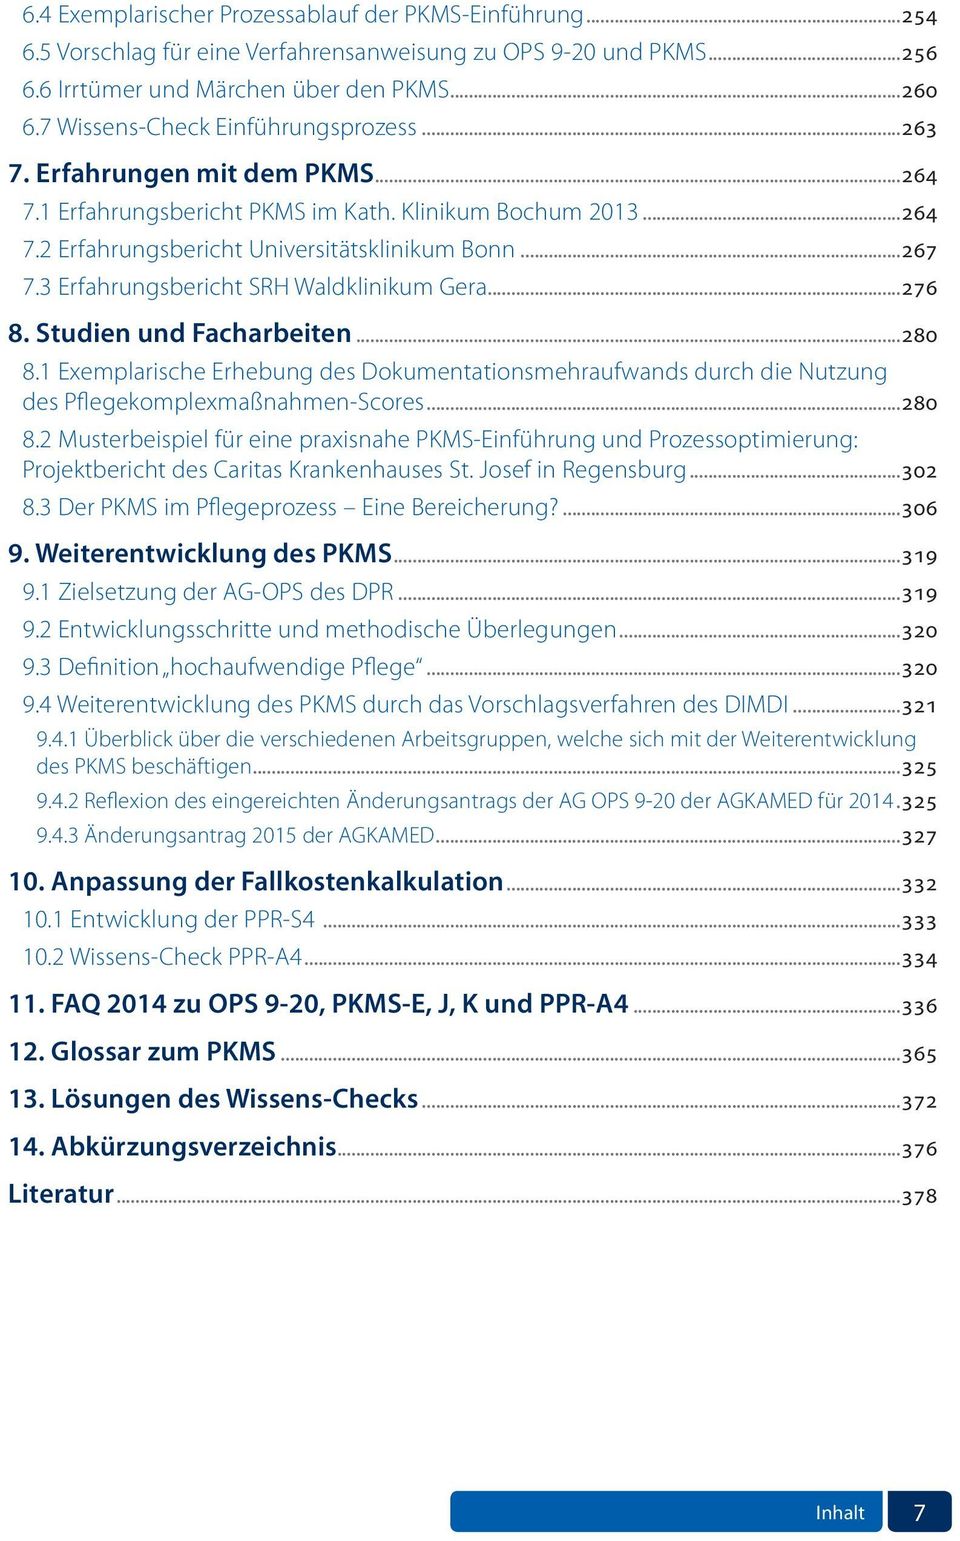 3 Erfahrungsbericht SRH Waldklinikum Gera...276 8. Studien und Facharbeiten...280 8.